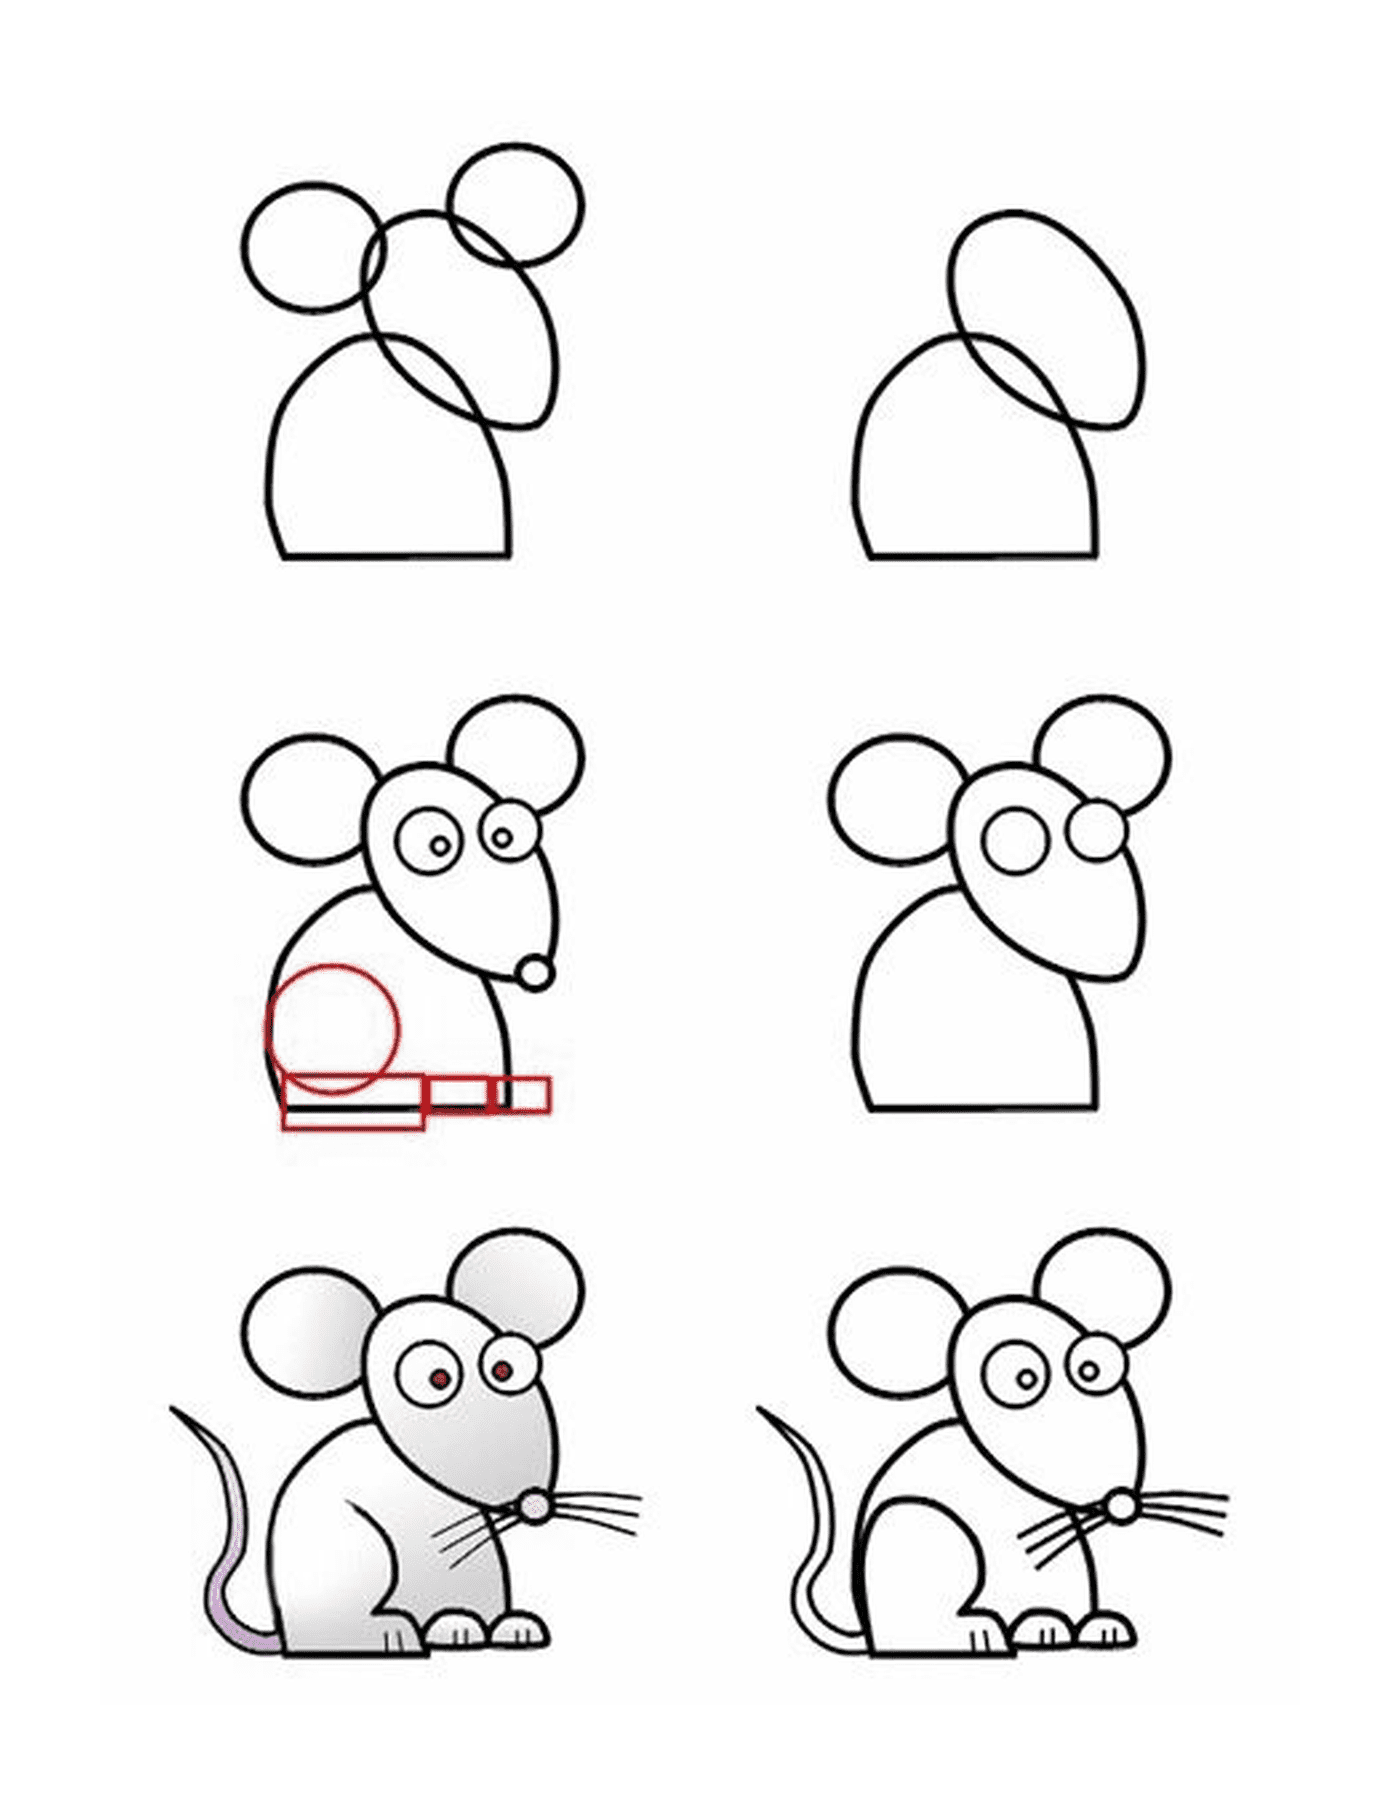  Come disegnare facilmente un mouse 